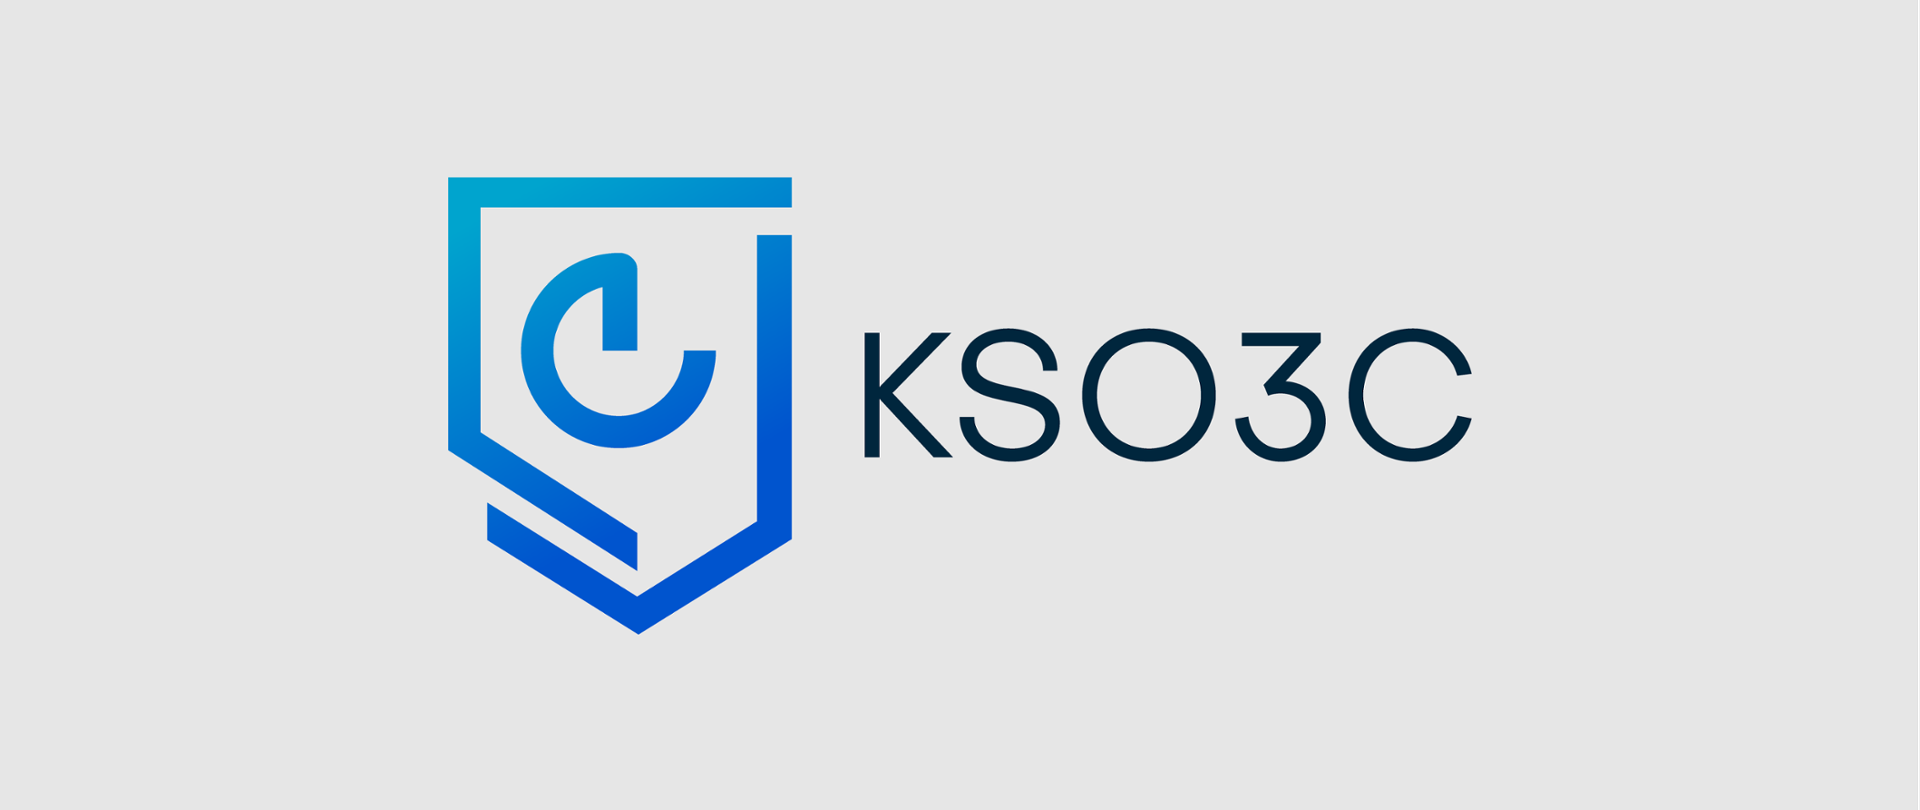 Grafika z logo projektu KSO3C